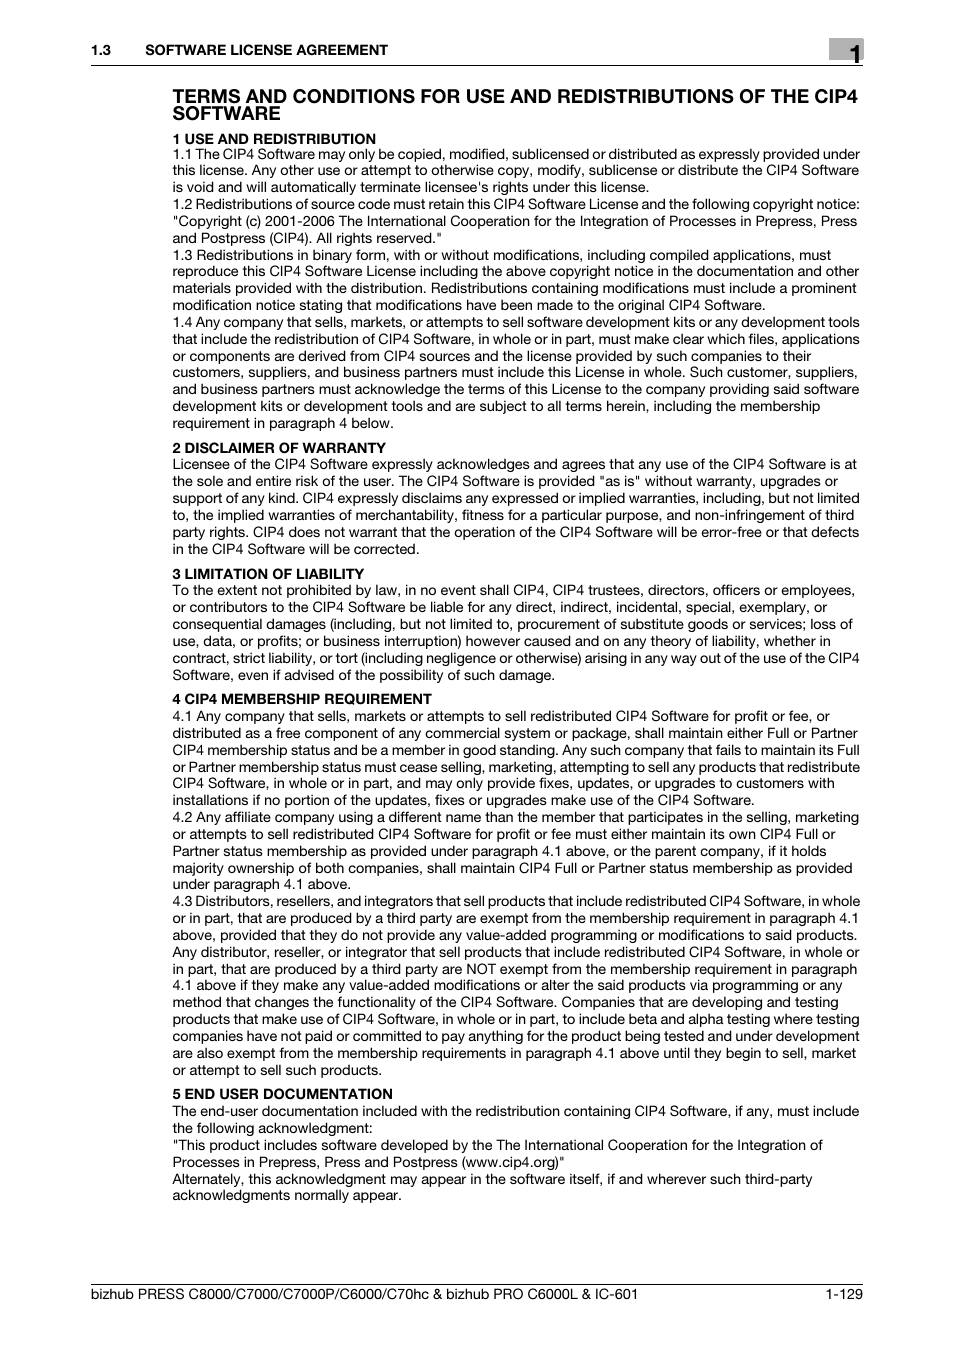 Konica Minolta bizhub PRESS C7000P User Manual | Page 130 / 138